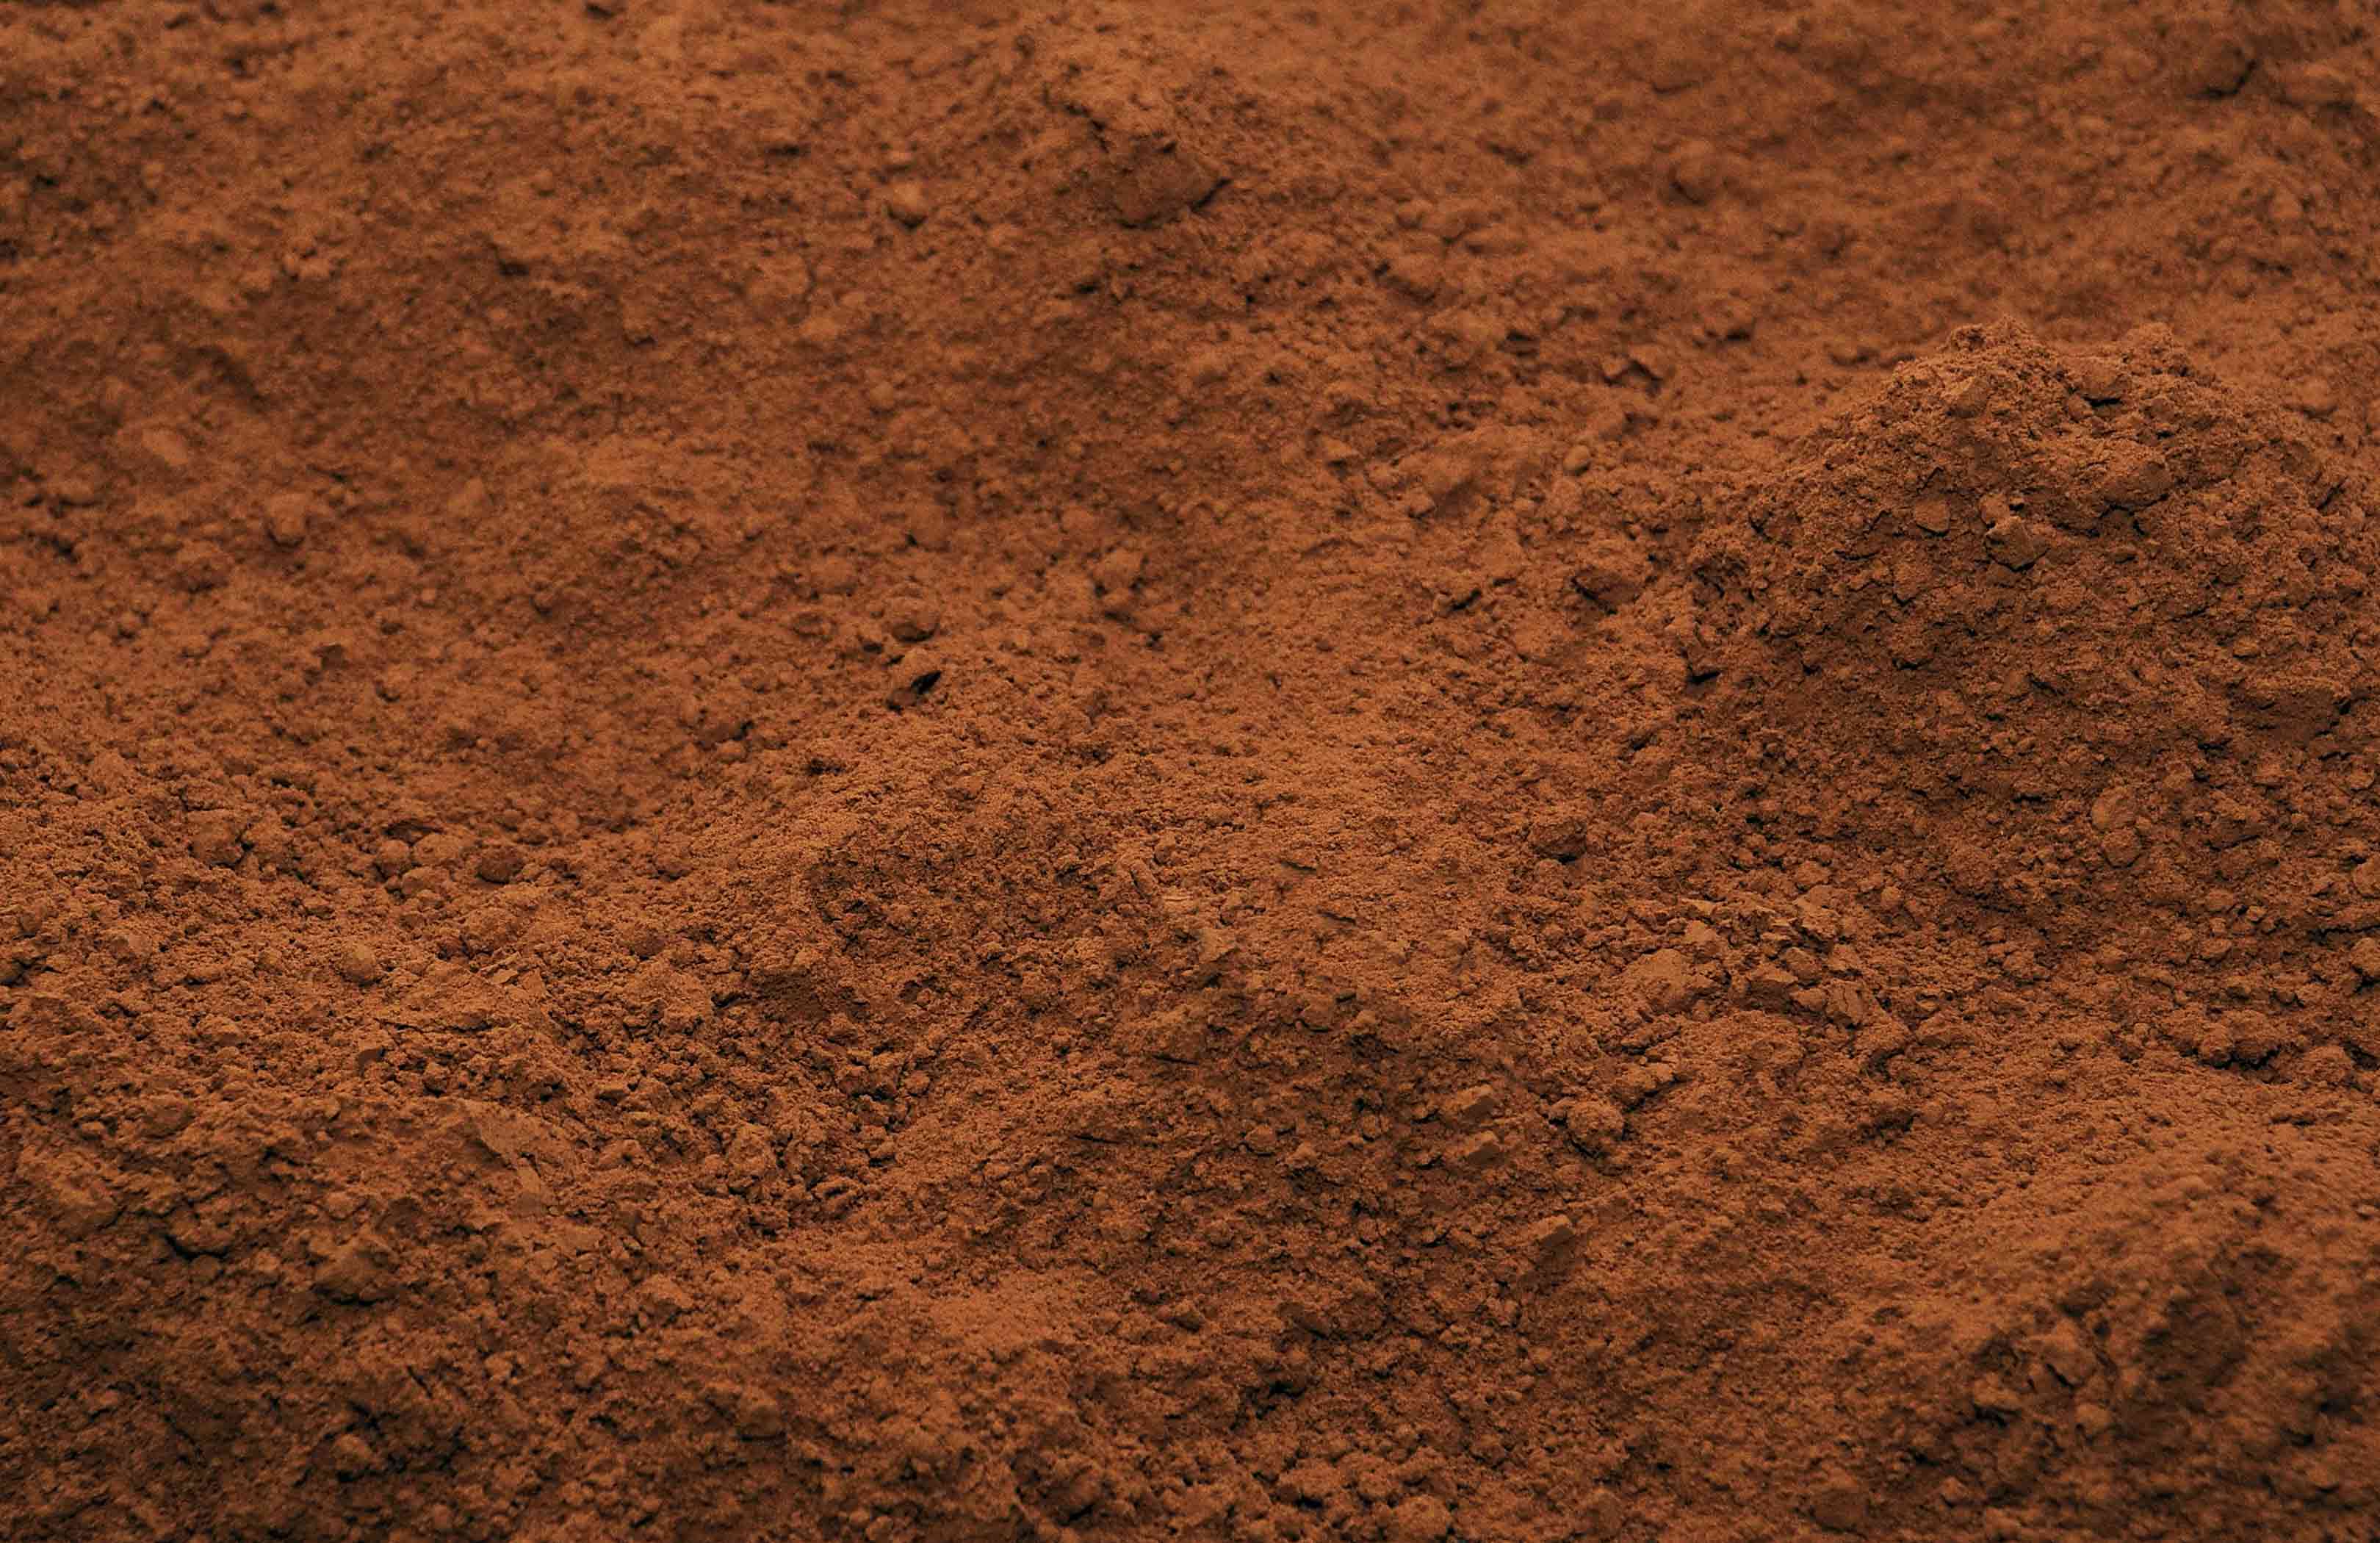 Dry reddish brown soil